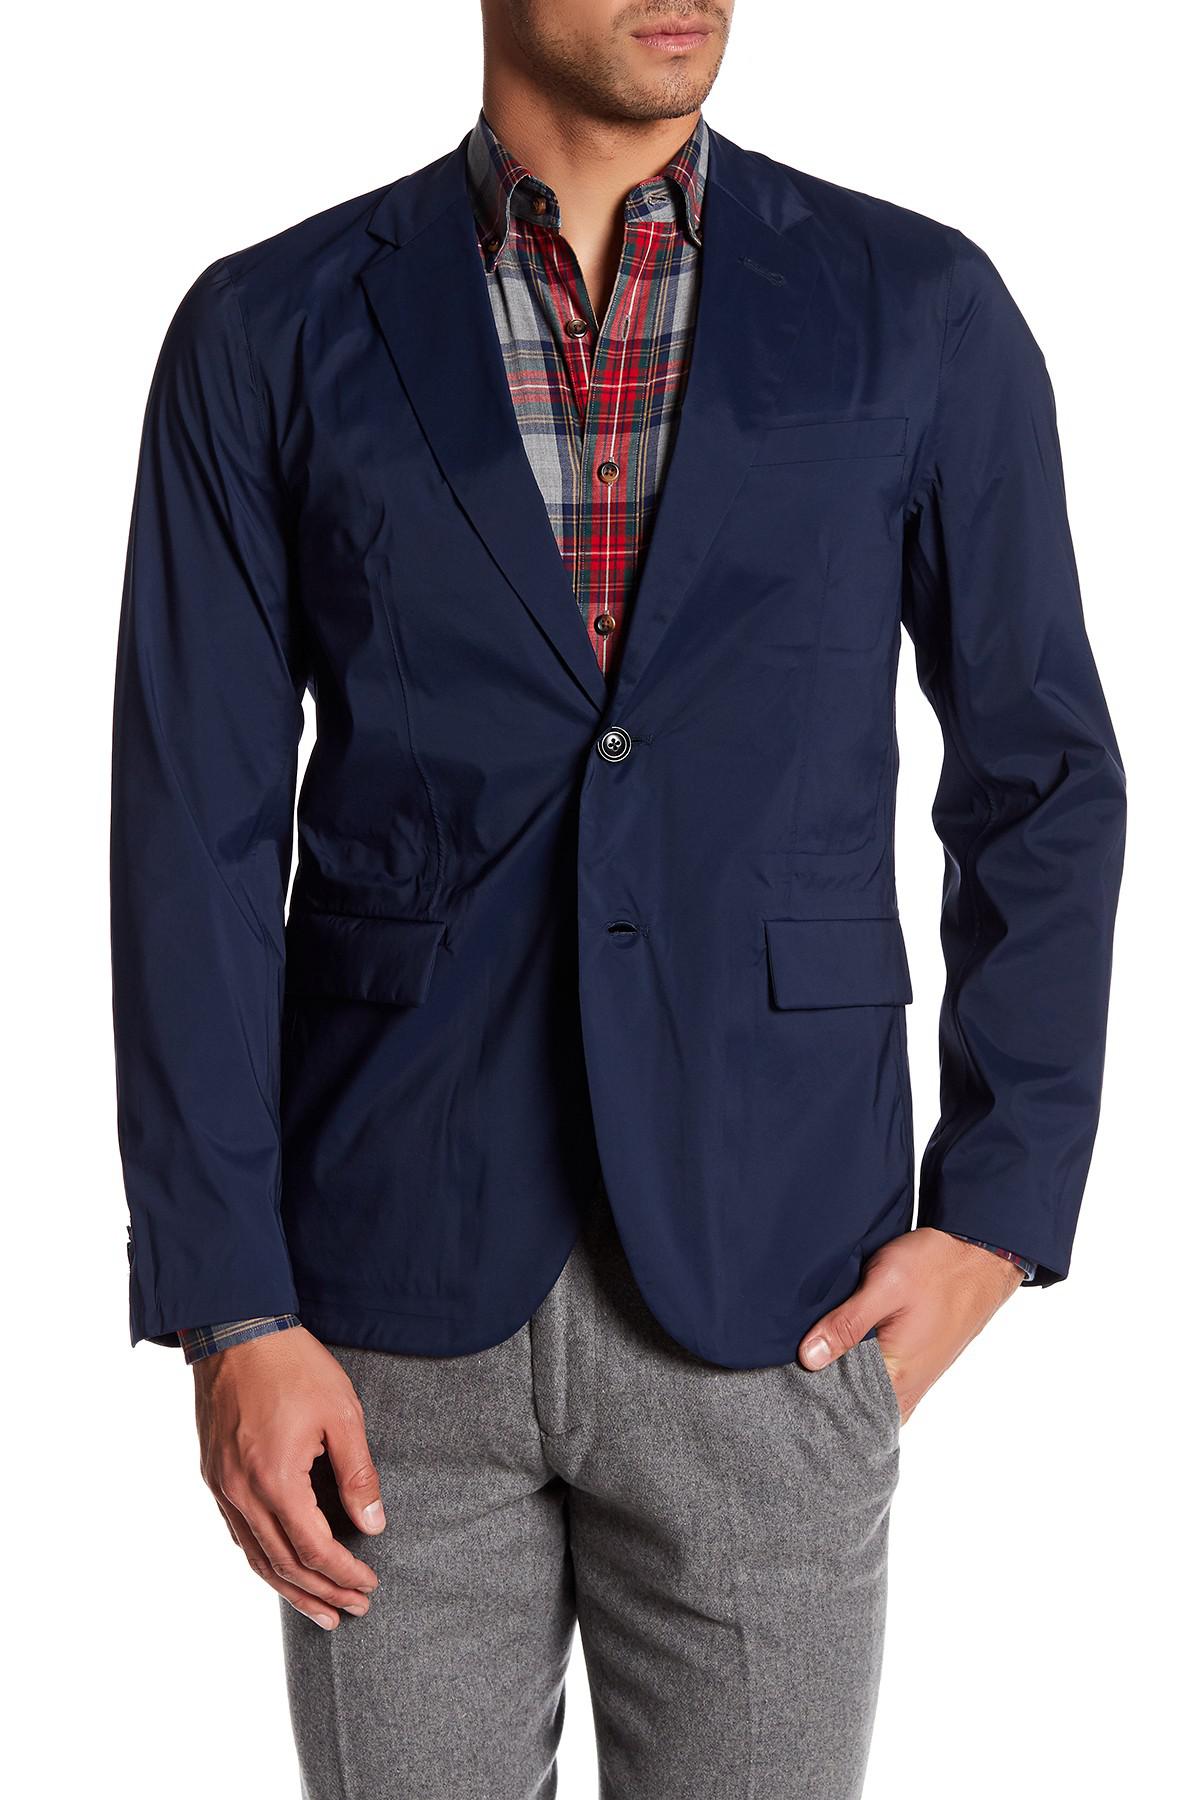 GANT Cotton The Commuter Weekender Fit Blazer in Marine (Blue) for Men -  Lyst